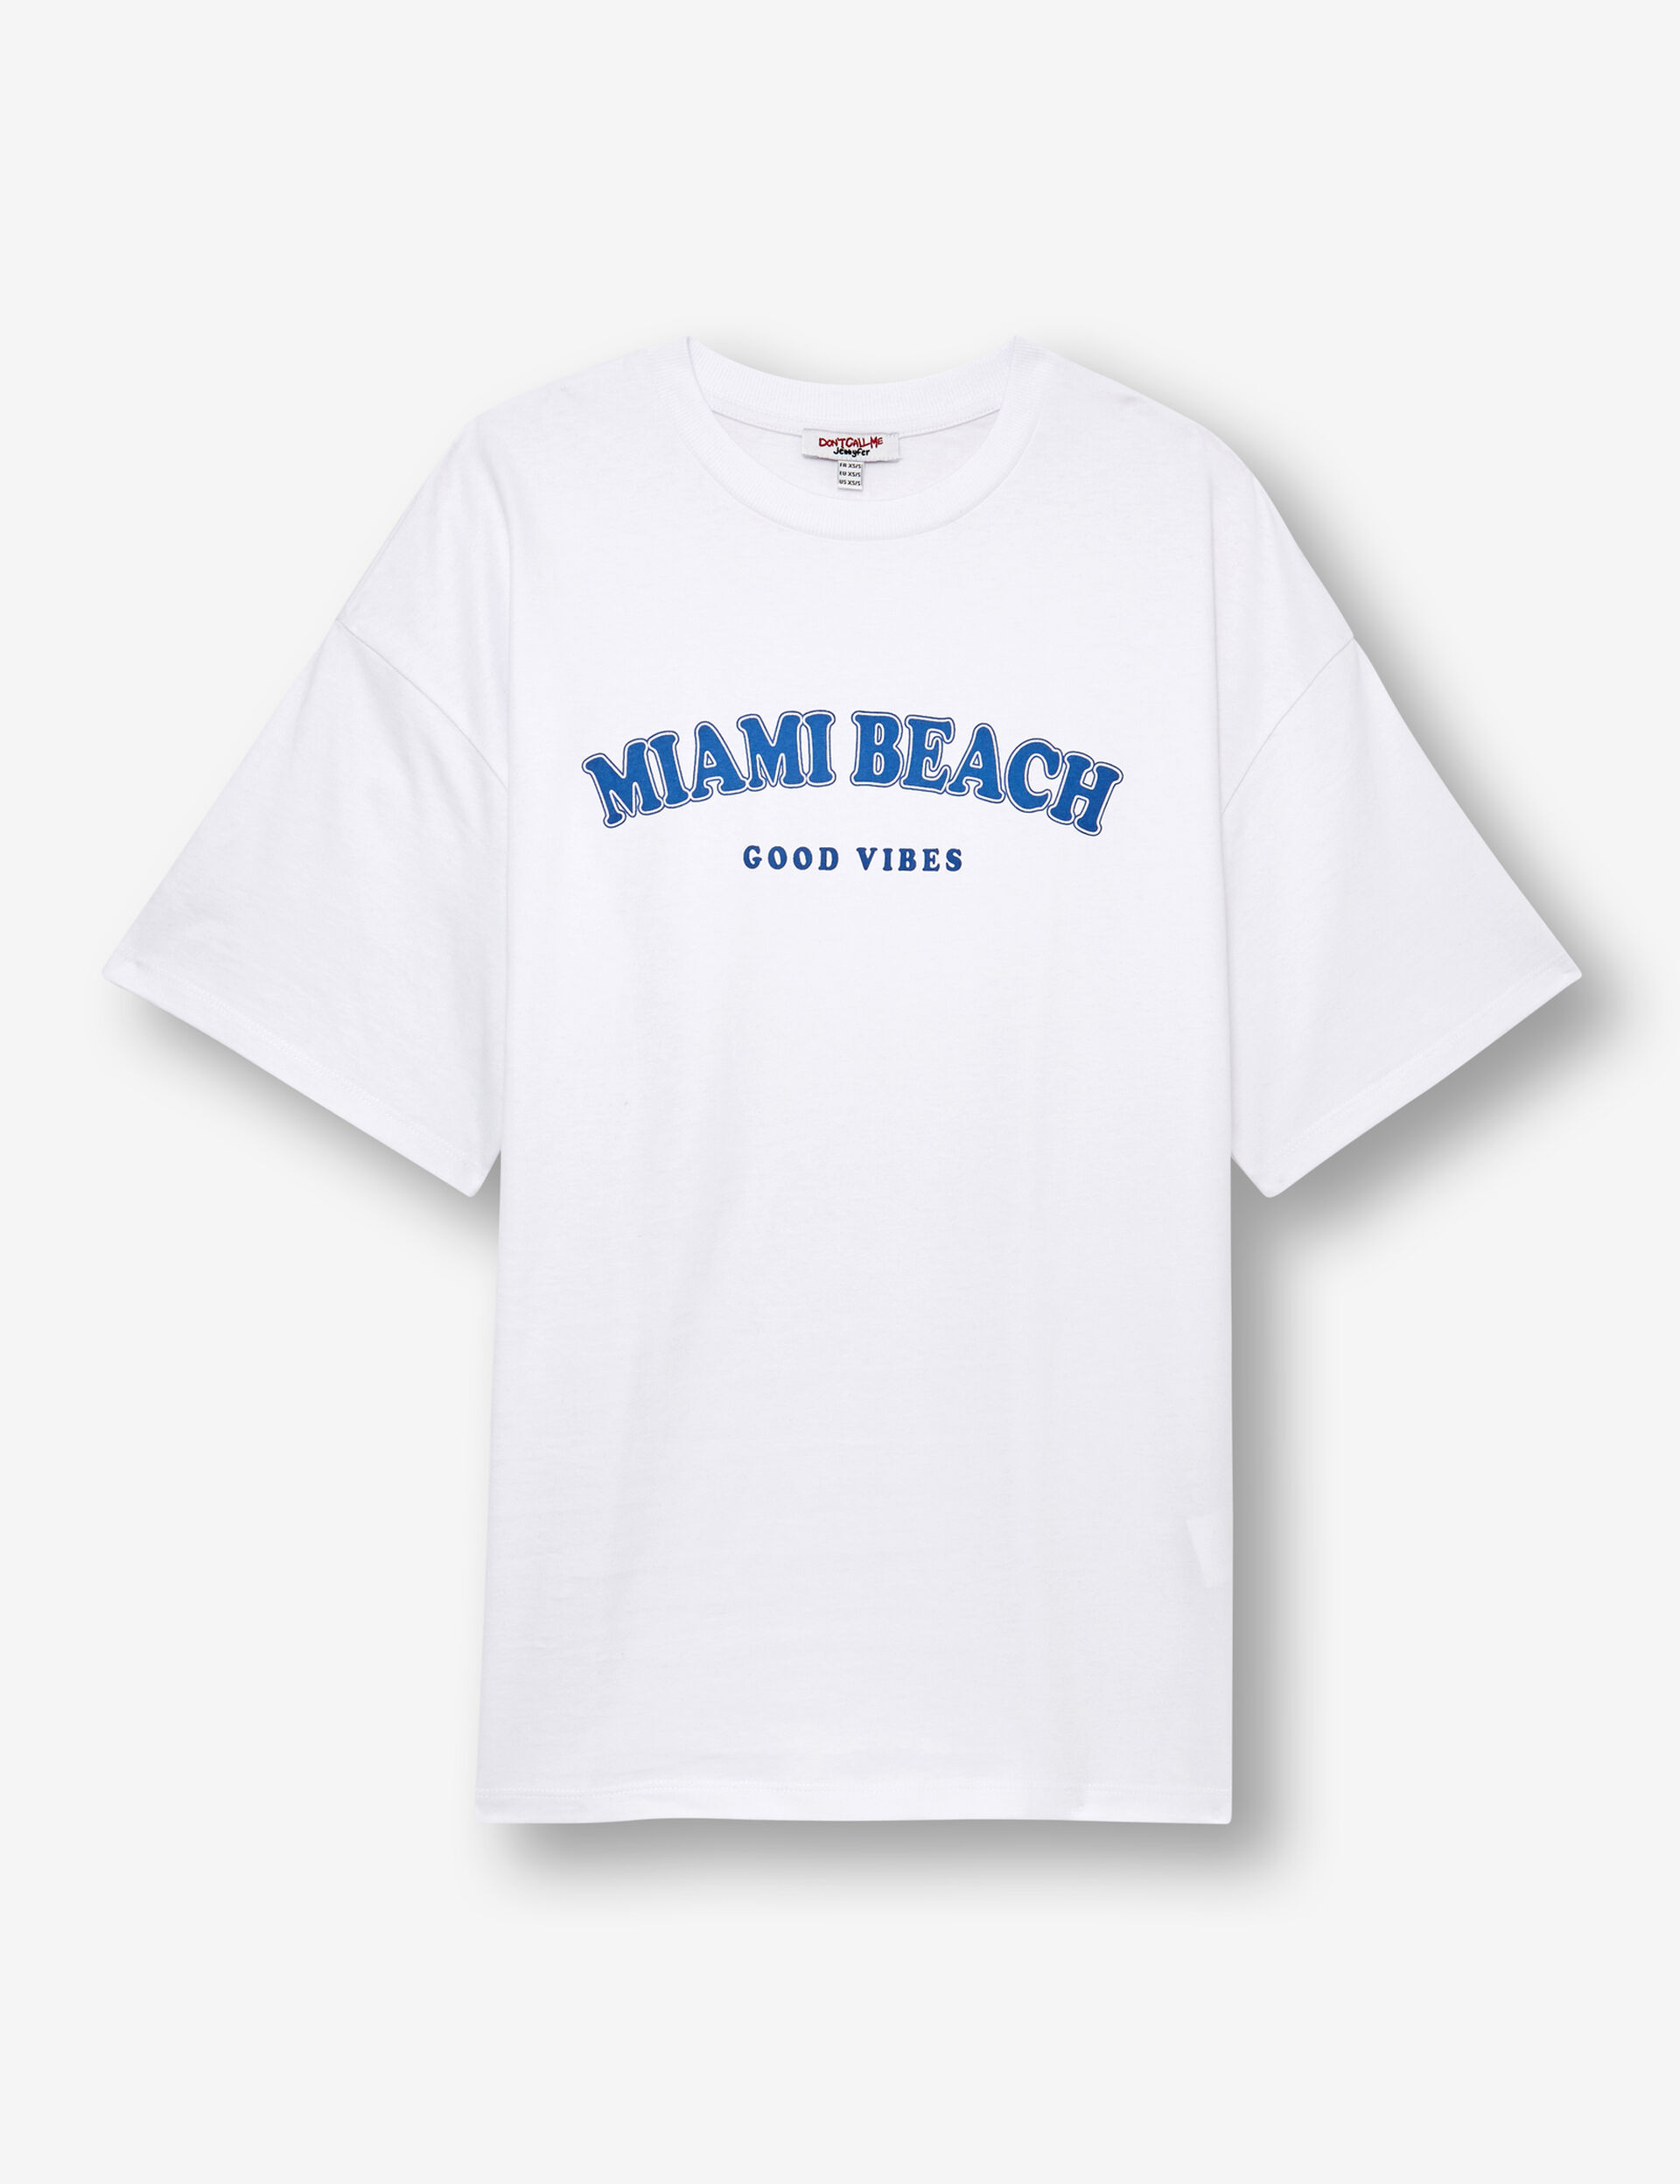 Tee-shirt Miami beach